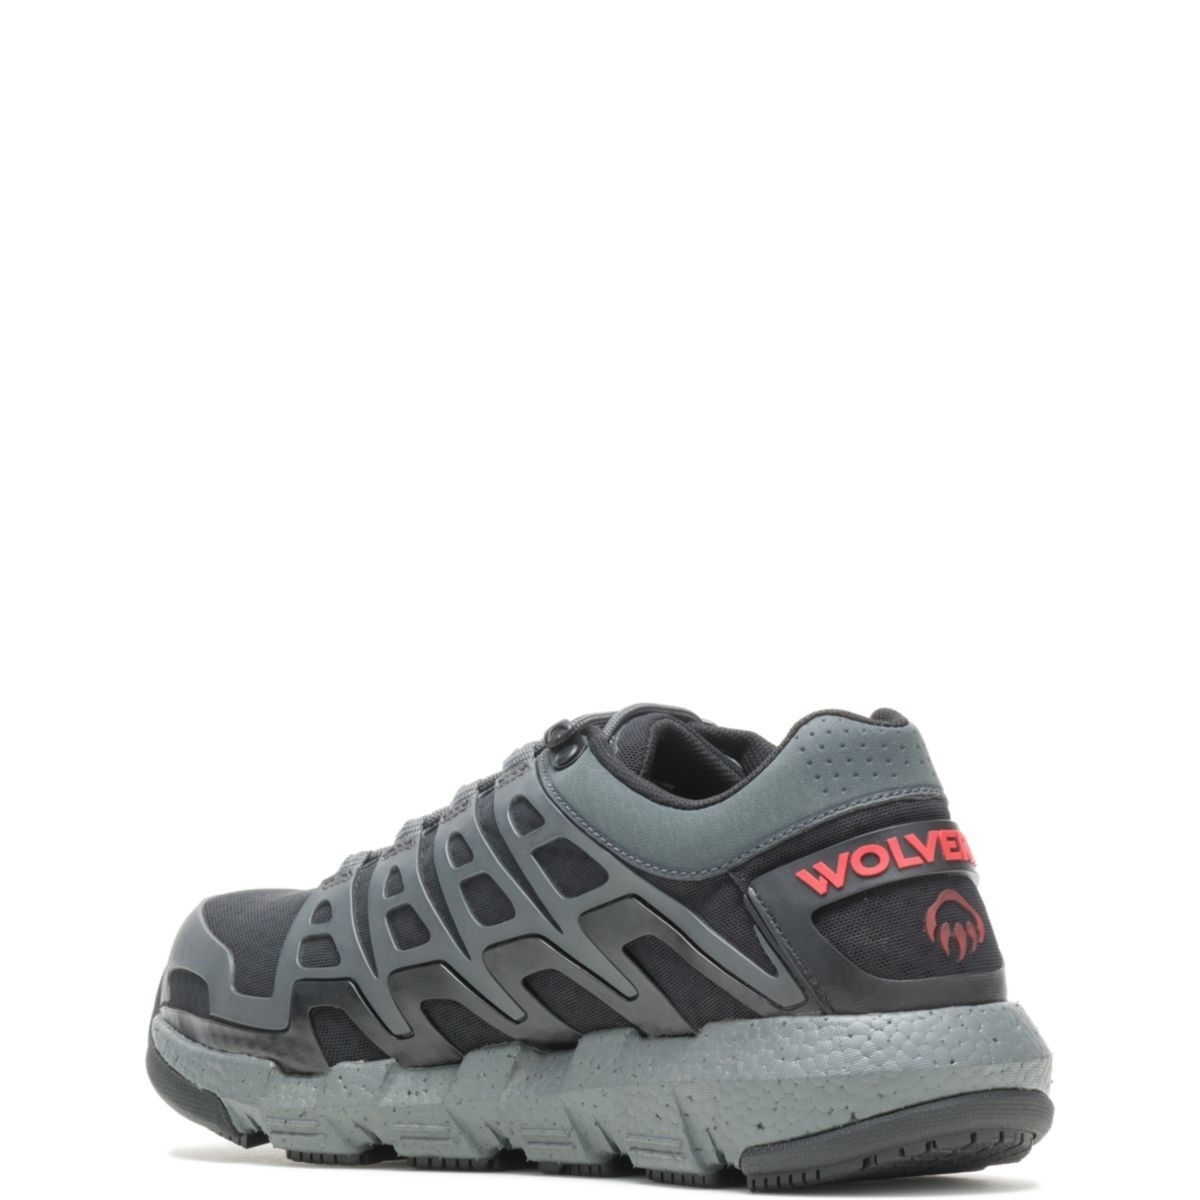 WOLVERINE Men's Rev Vent UltraSpringâ¢ DuraShocksÂ® CarbonMAXÂ® Composite Toe Work Shoe Charcoal - W211016 CHARCOAL - CHARCOAL, 10.5 X-Wide